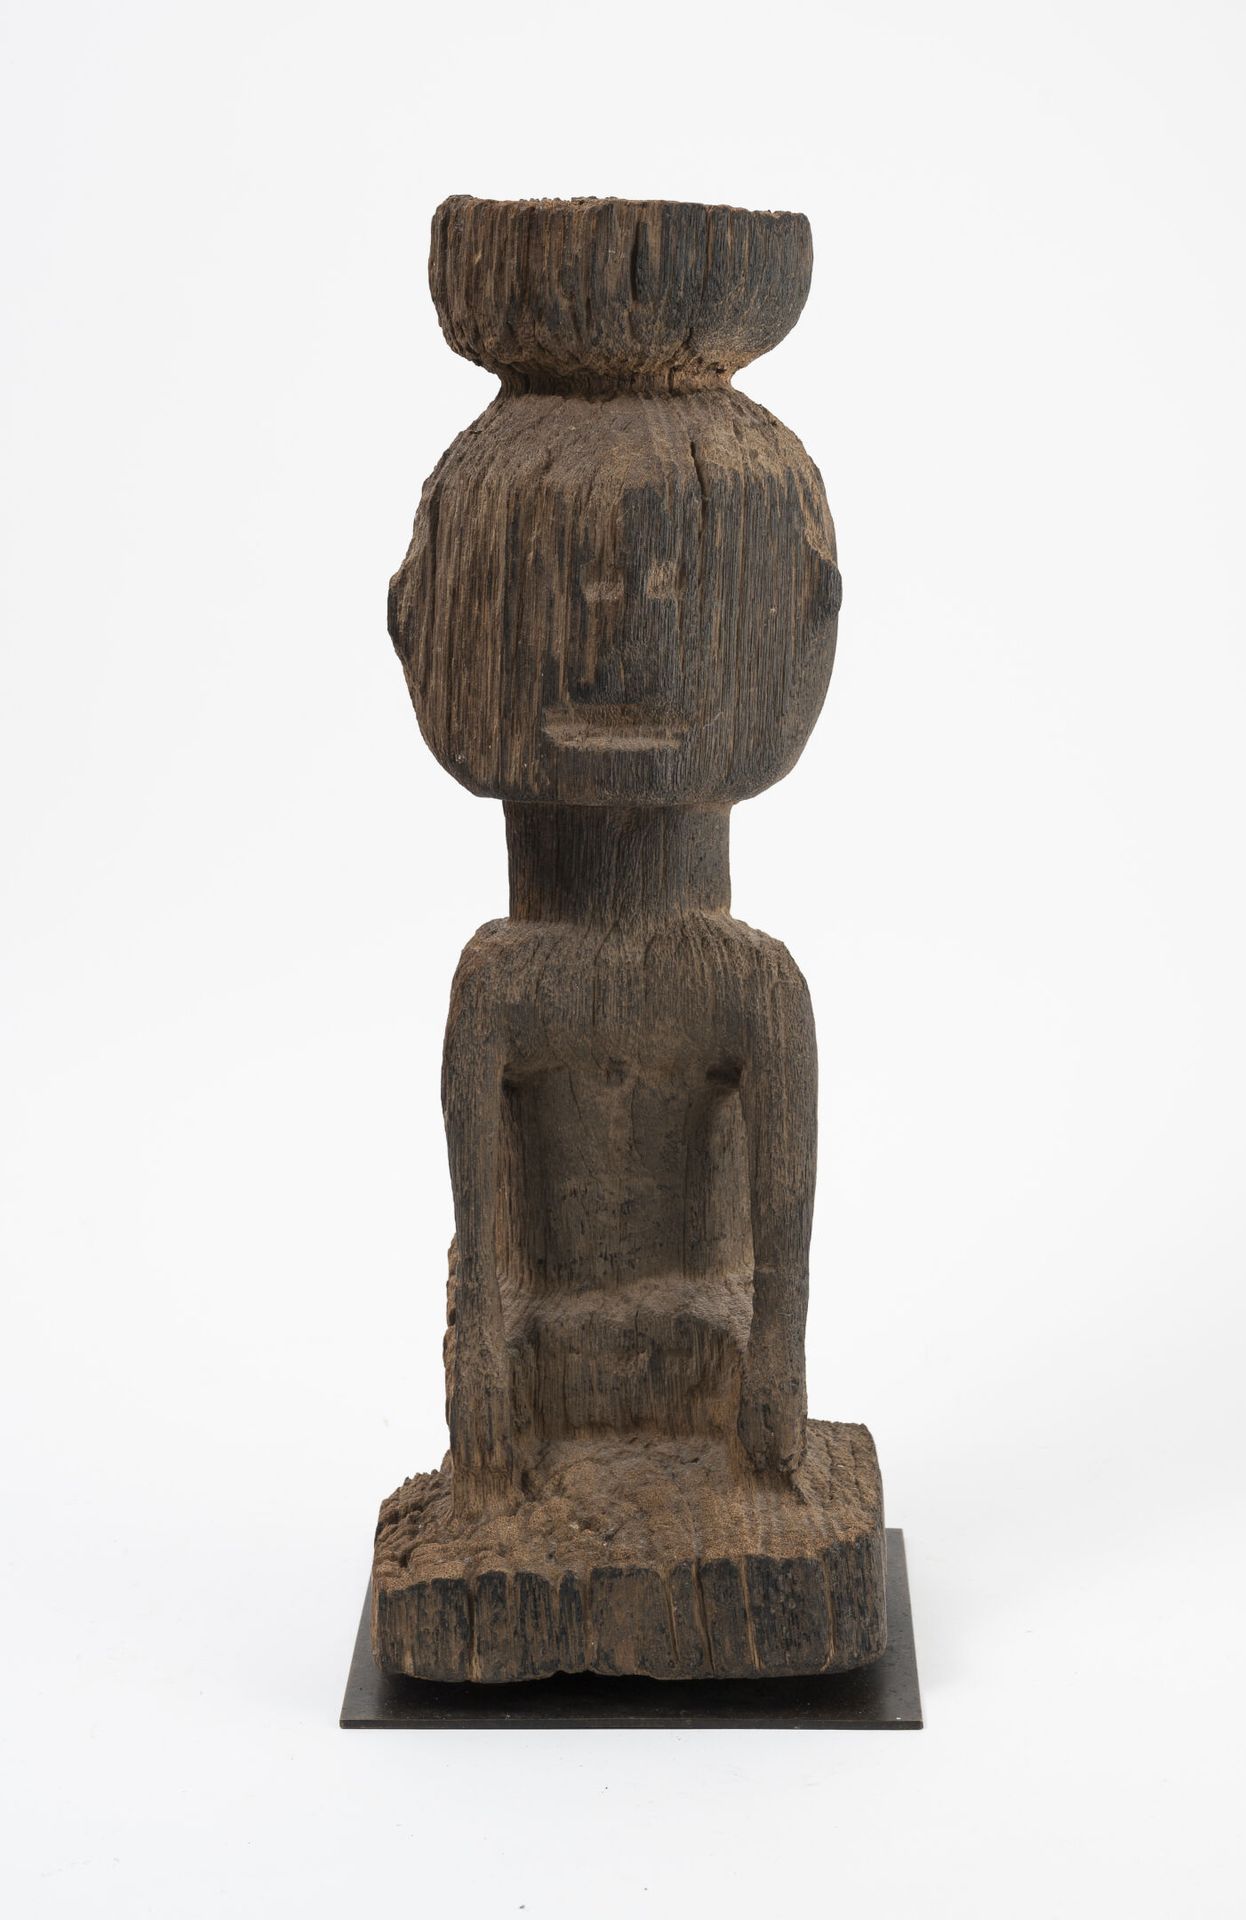 AFRIQUE Statuetta di legno intagliata e molto erosa di un antenato.

H. 42 cm.

&hellip;